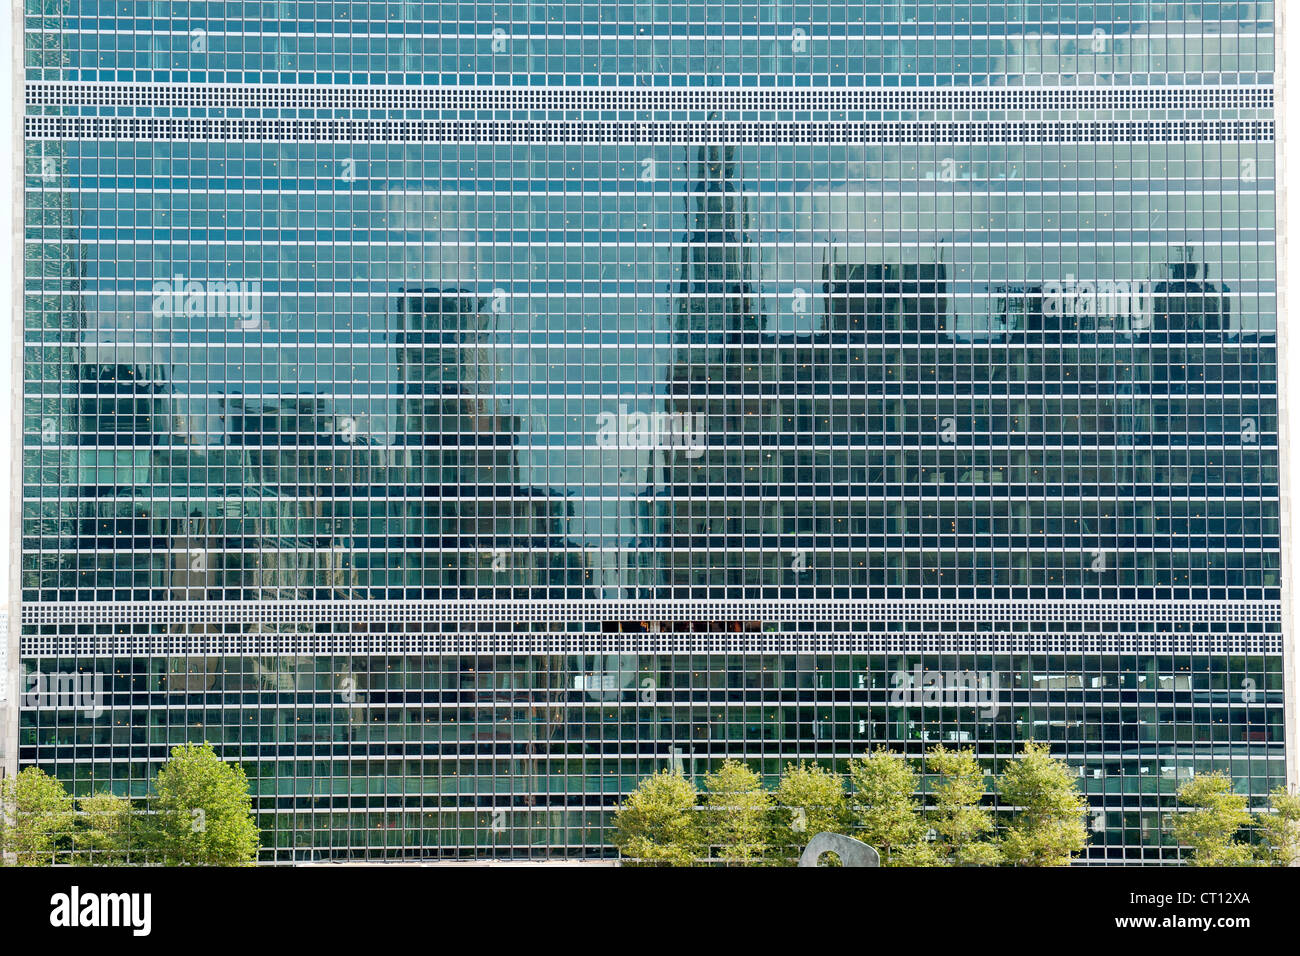 Die Skyline von Manhattan spiegelt sich in den Fenstern der Vereinten Nationen Gebäude in New York City, USA. Stockfoto